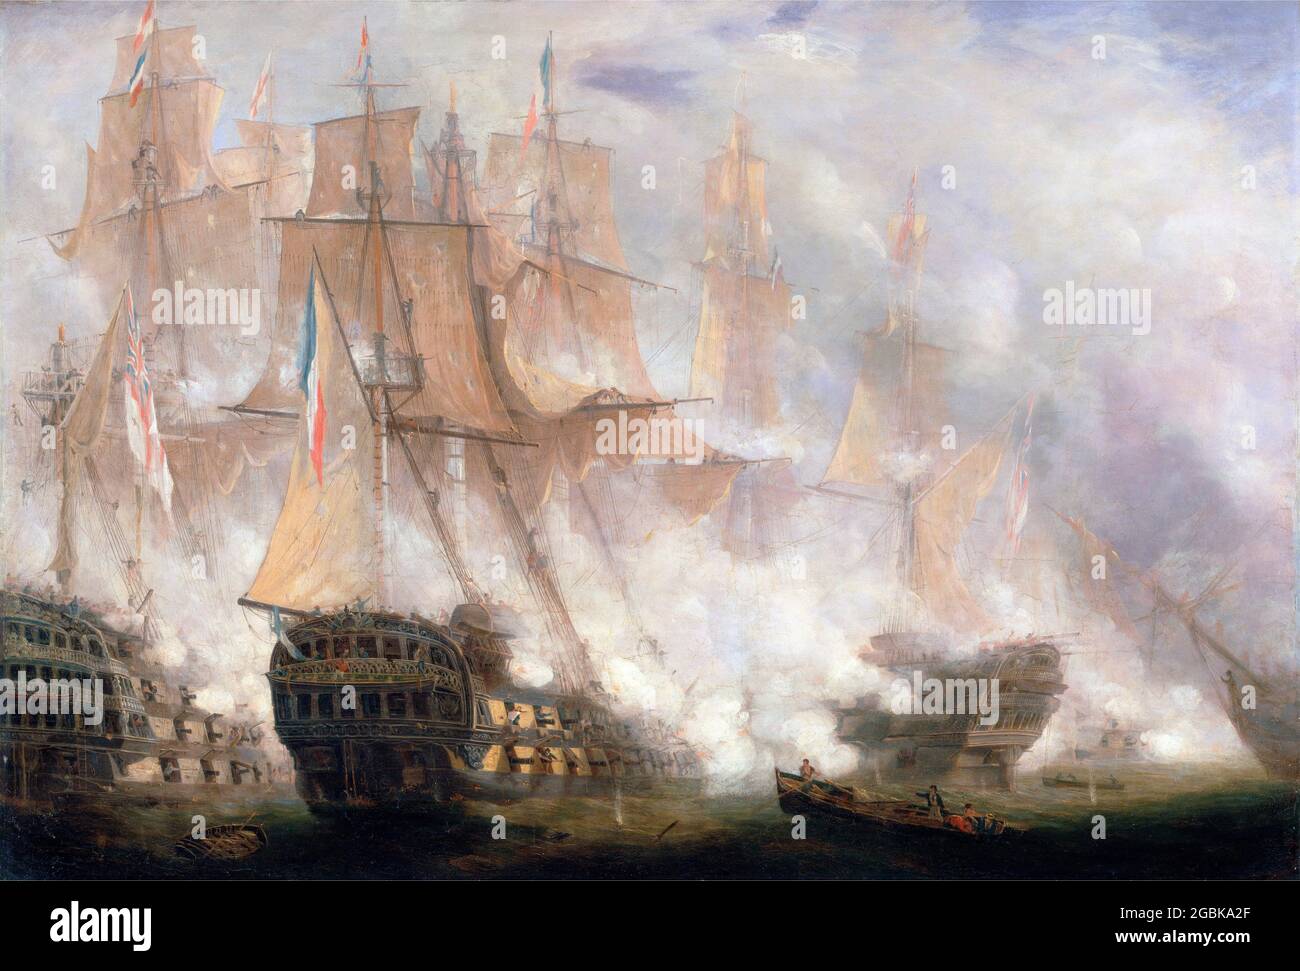 La bataille de Trafalgar par John Christian Schetky (1778-1874), huile sur toile, c. 1841 Banque D'Images